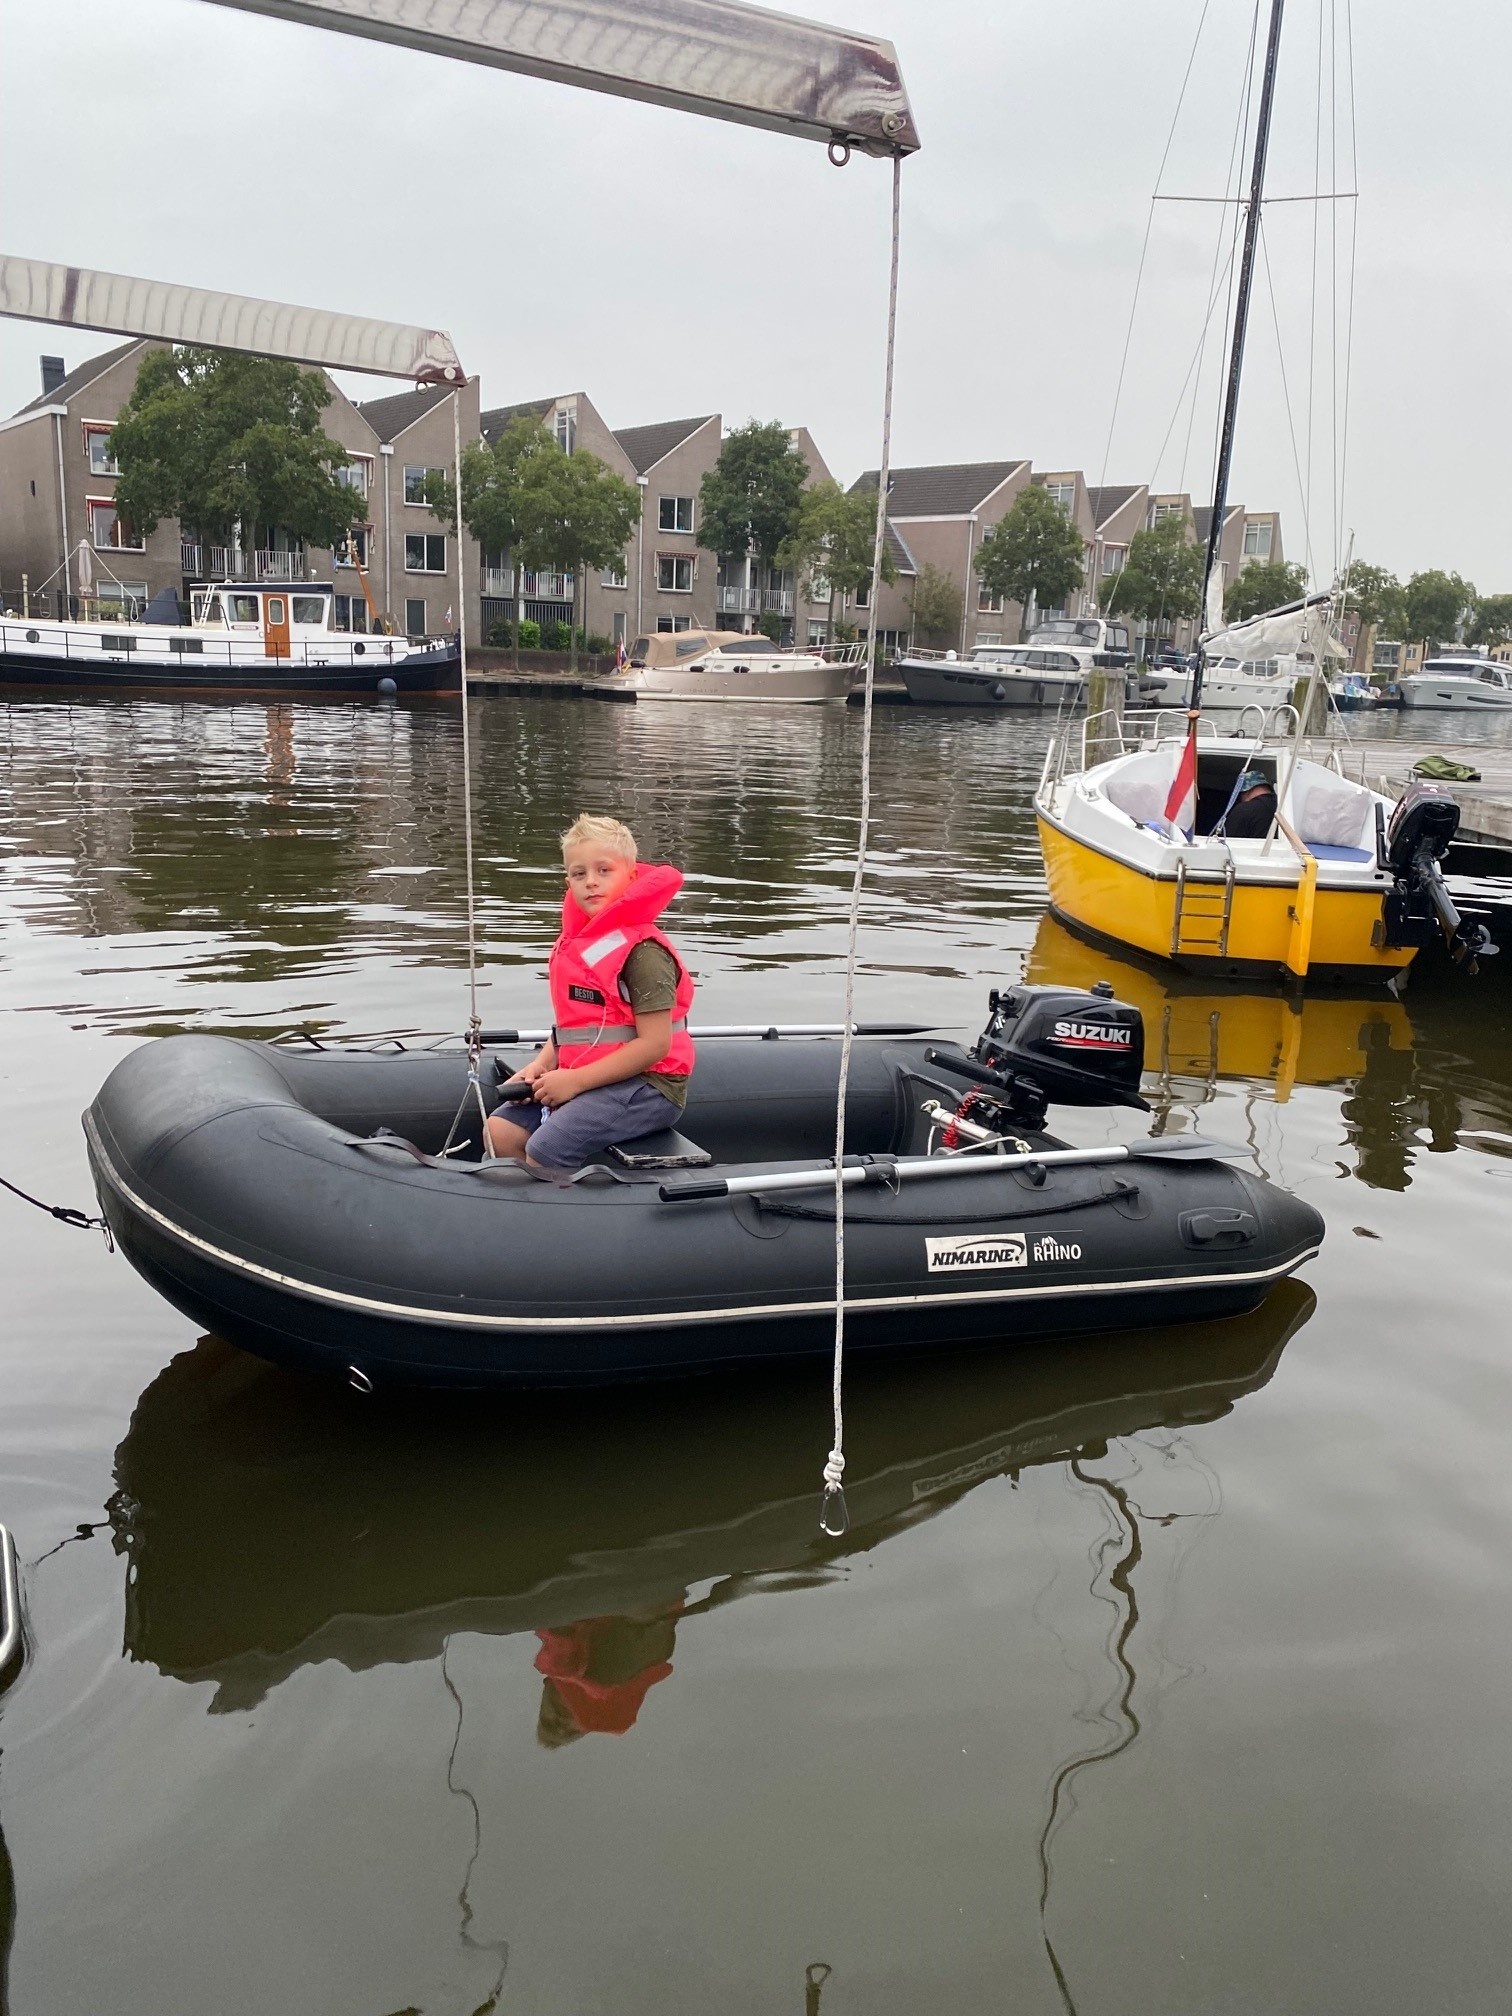 horizon Banket Rand Kenniscentrum - Een rubberboot kopen: waar moet ik op letten? -  Boottotaal.nl